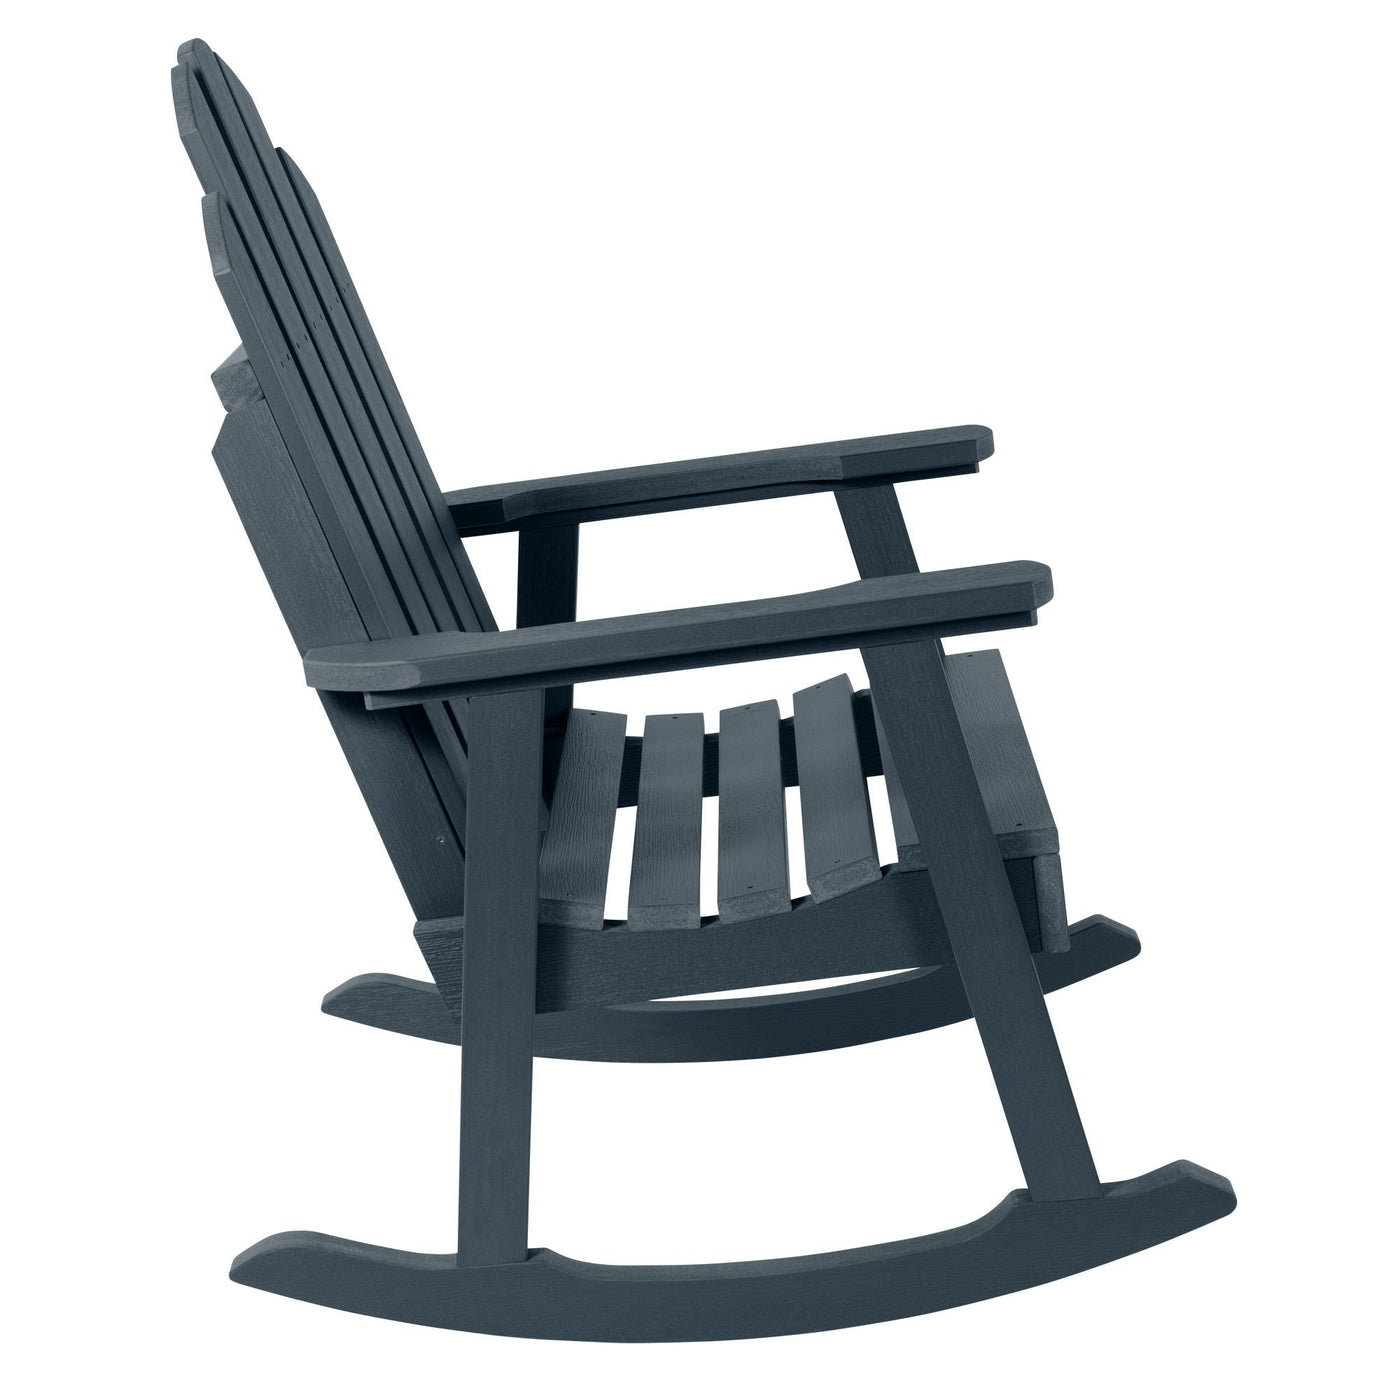 Westport Garden Rocking Chair Highwood USA 